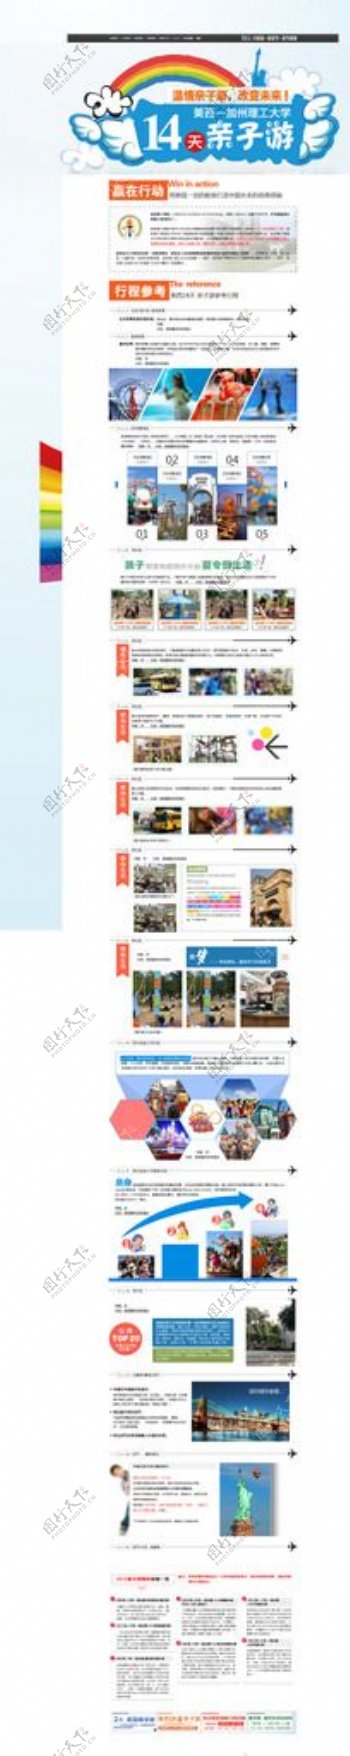 教育留学培训行业网页专题模板图片